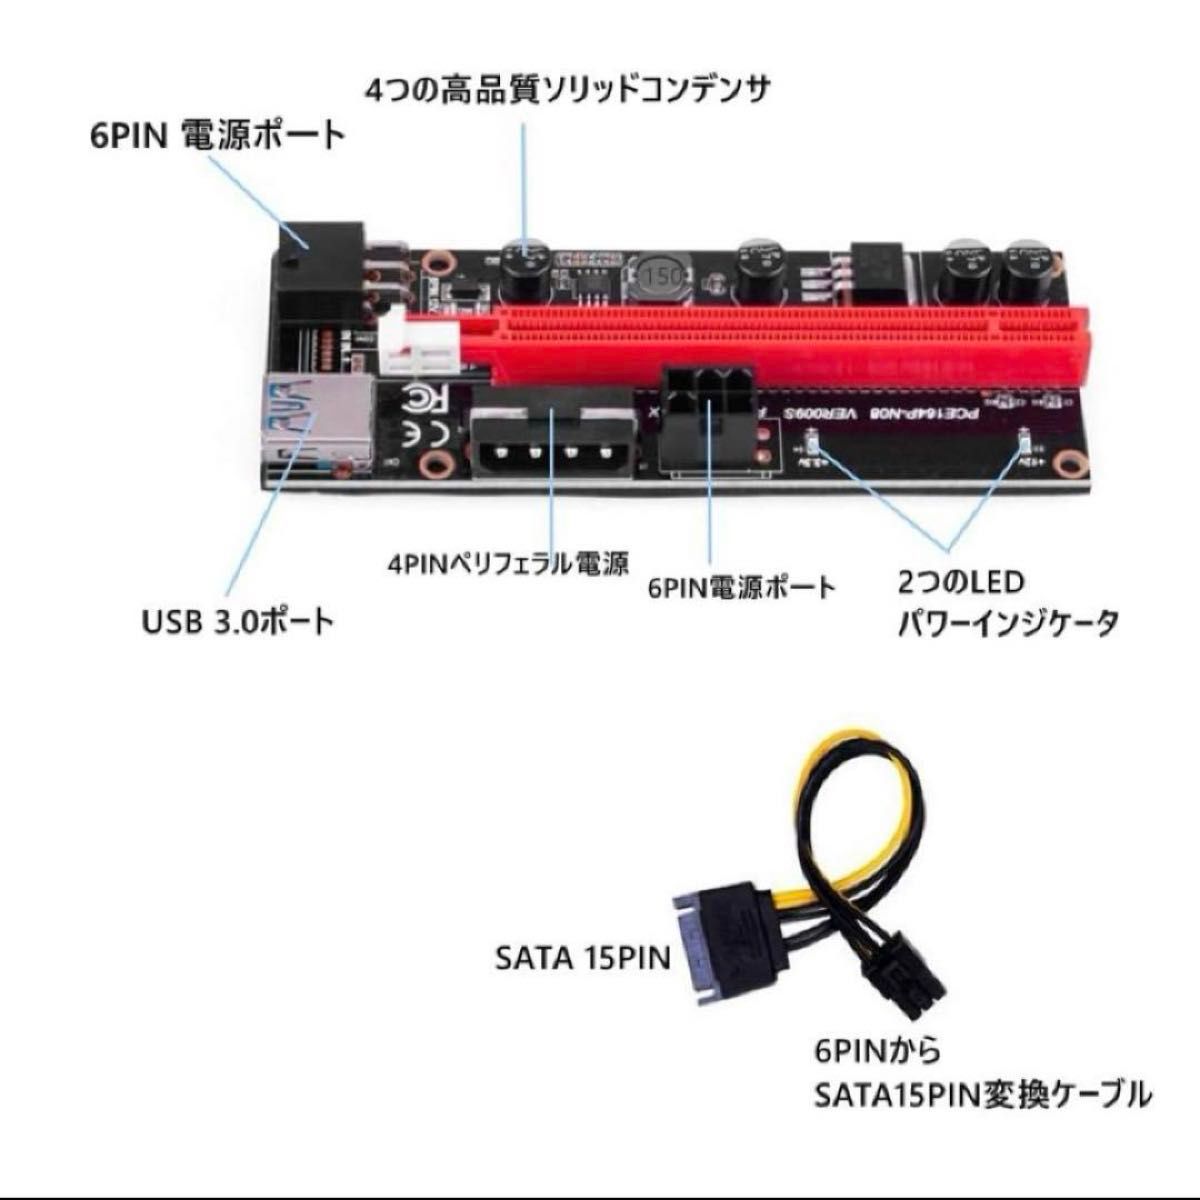 ライザーカード Pcieライザー PCI-E VER 009S 1x-16xグラフィック拡張 USB3.0 PCI-E 